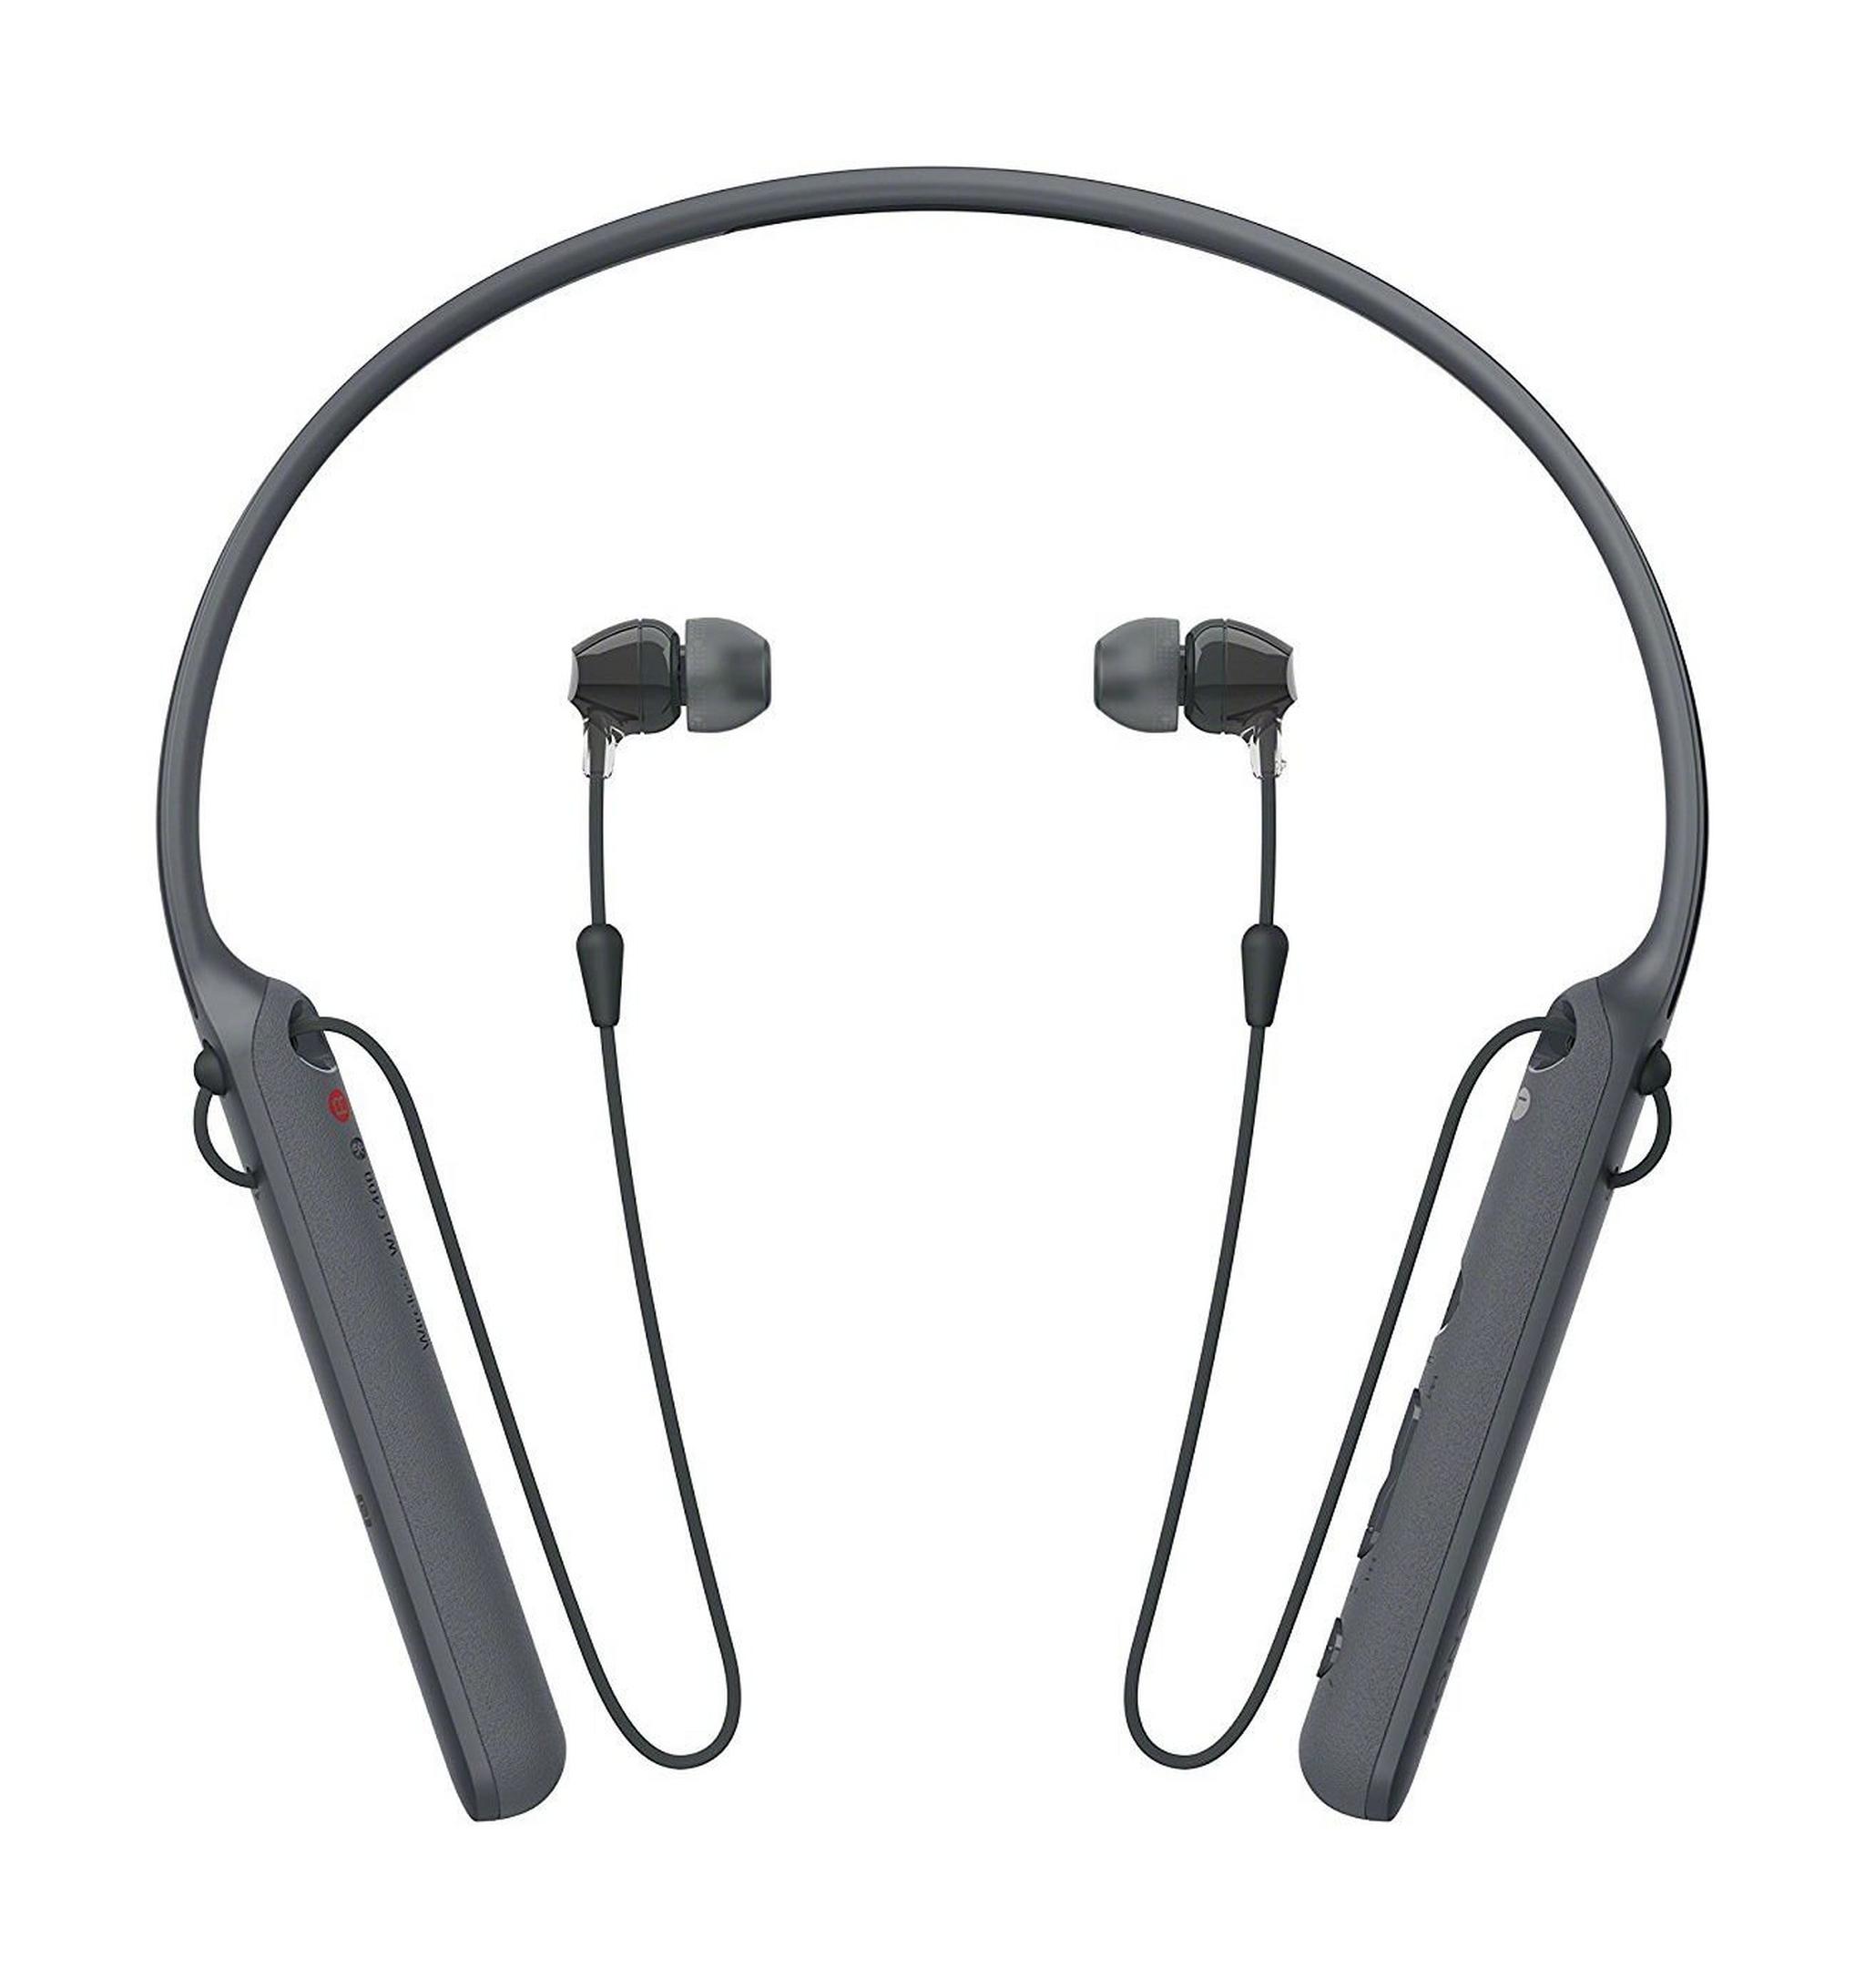 سماعات الرأس اللاسلكية من سوني - أسود (WI-C400 / BZ)